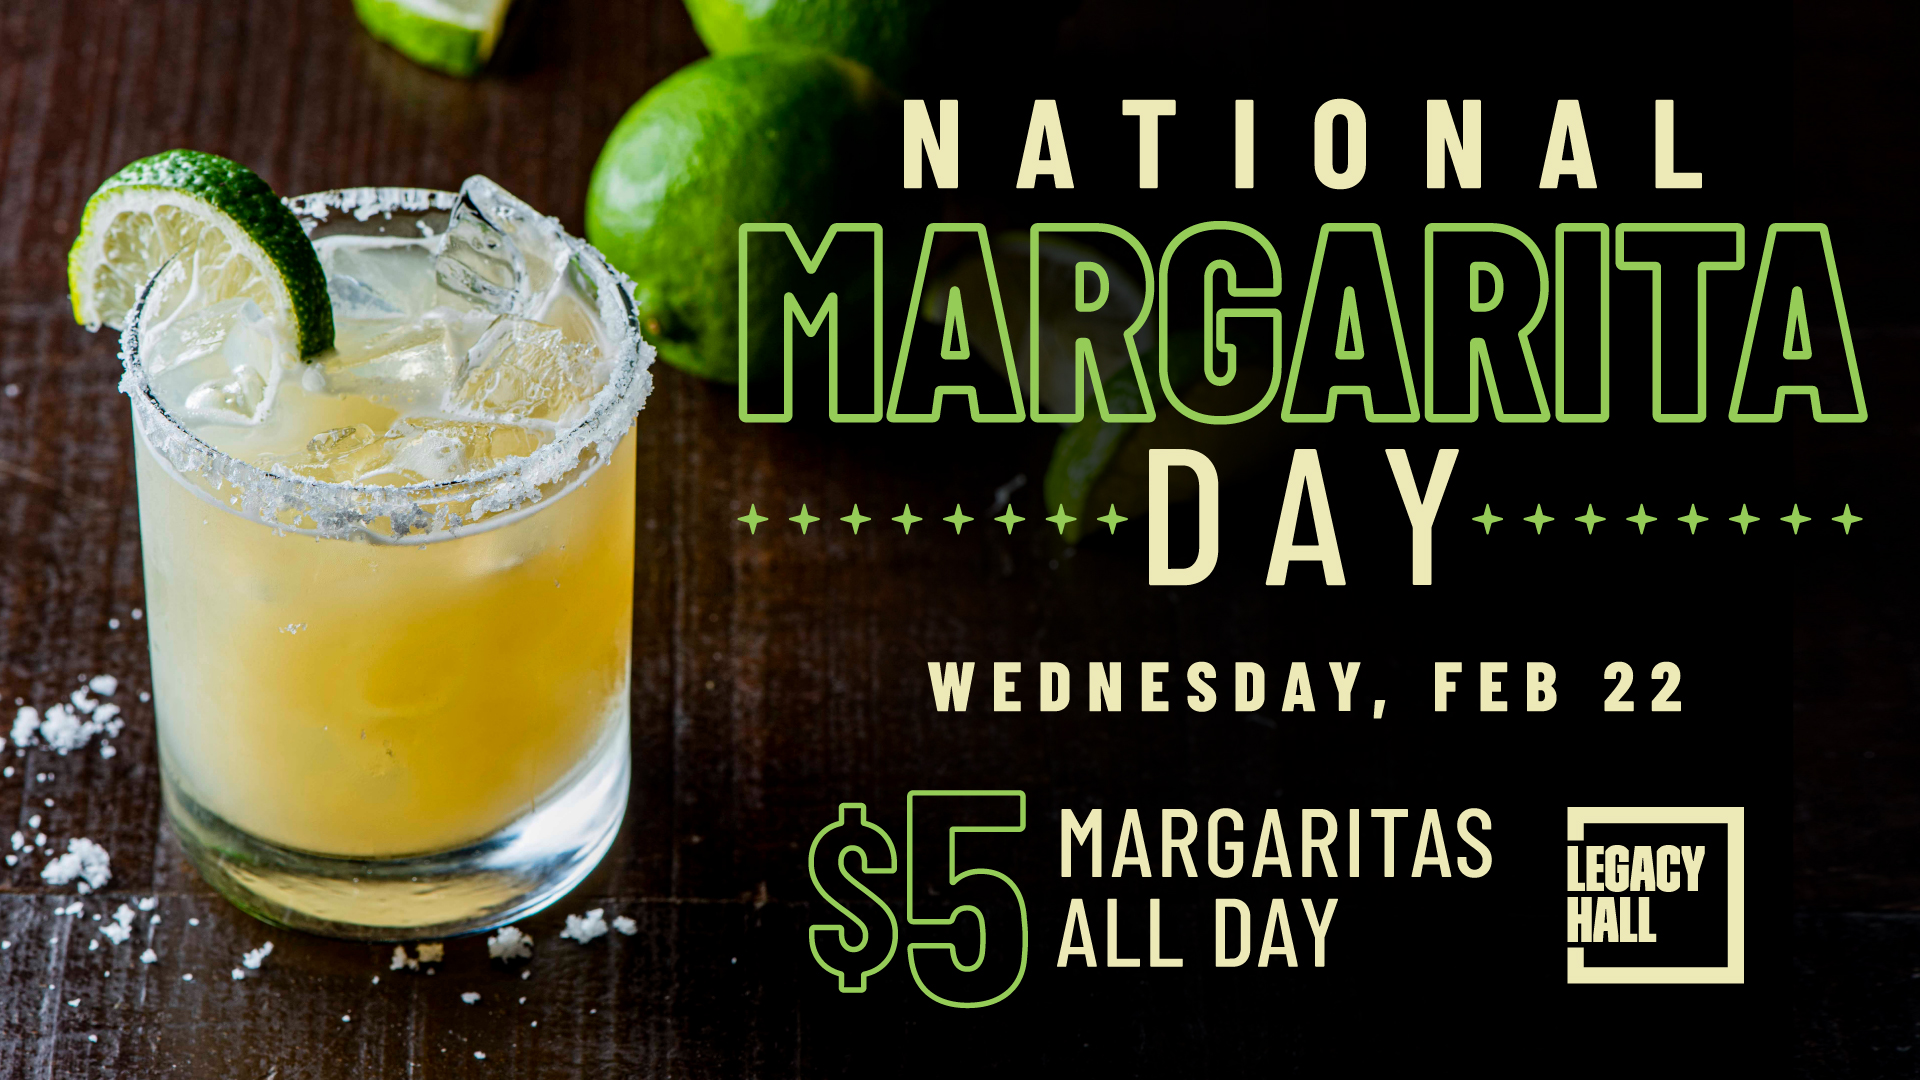 National Margarita Day at Legacy Hall